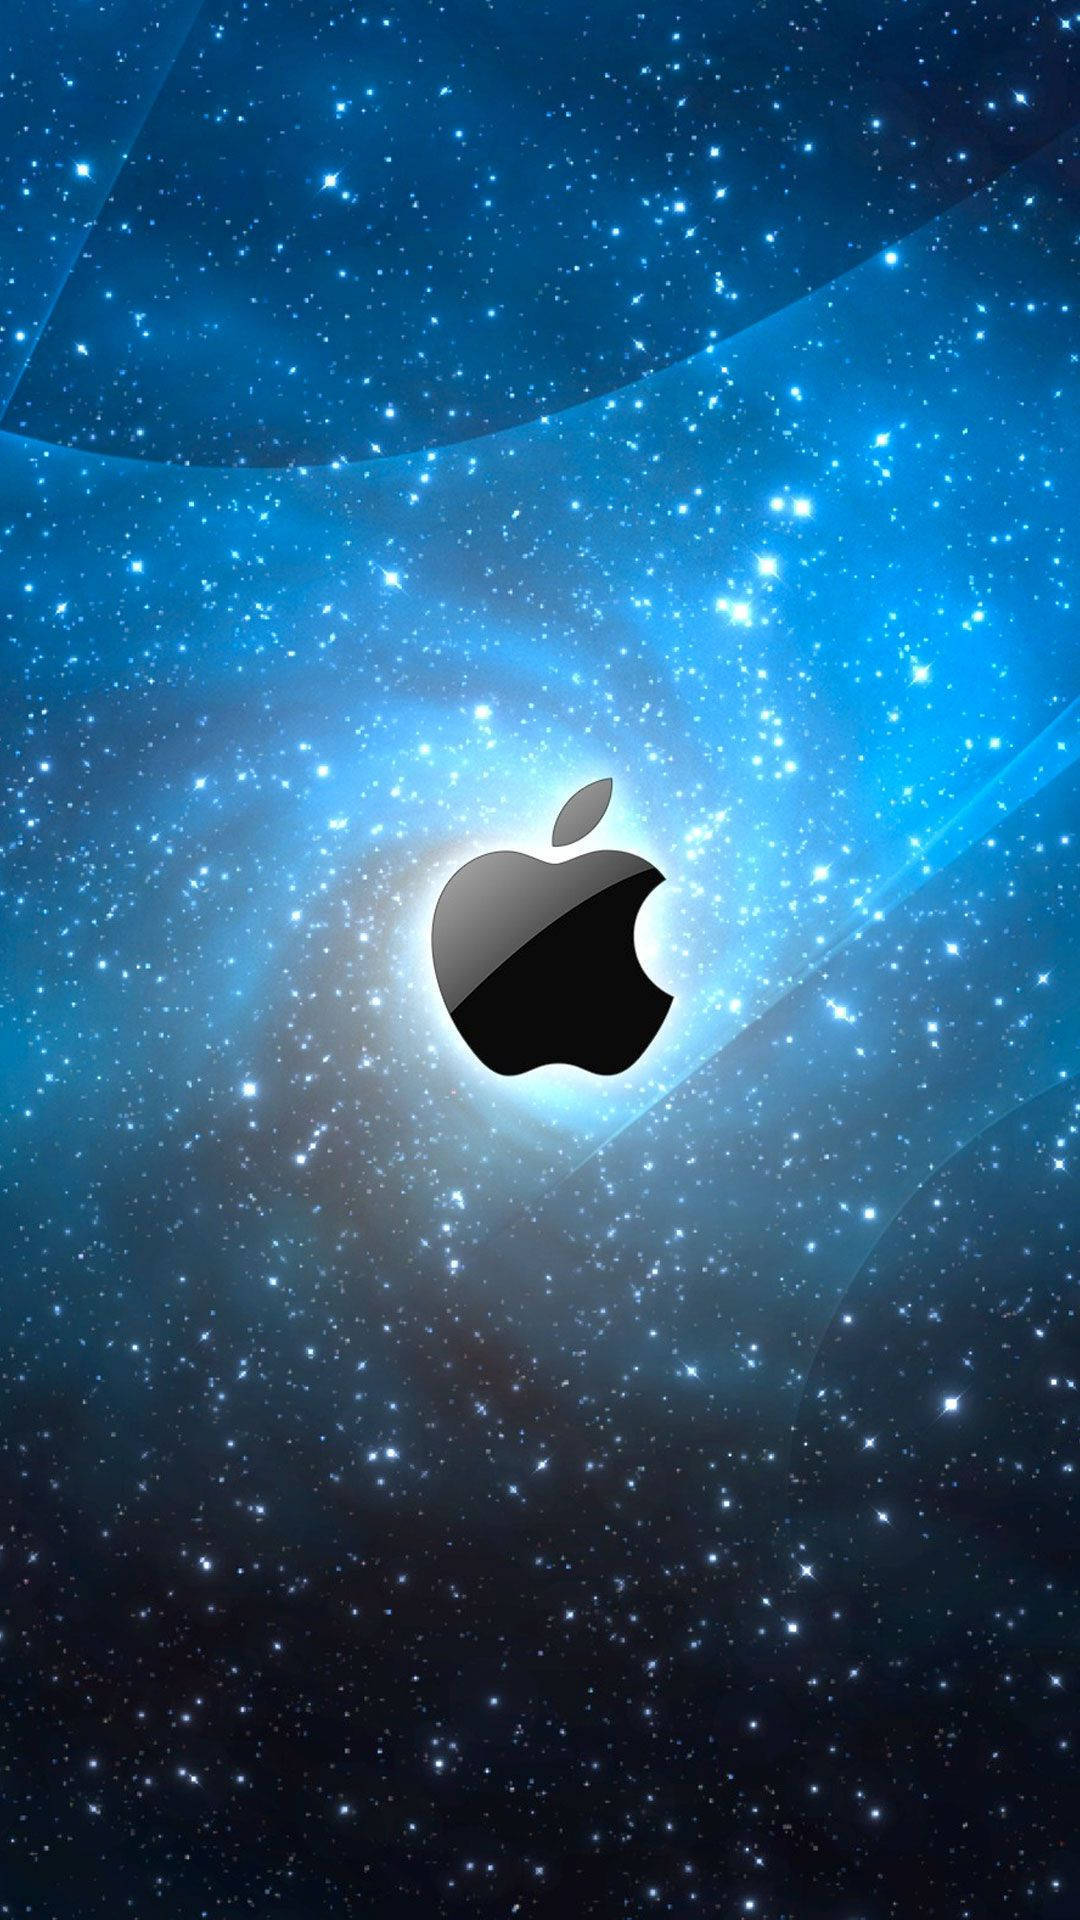 Interstellar 3d Apple Iphone Logo Background